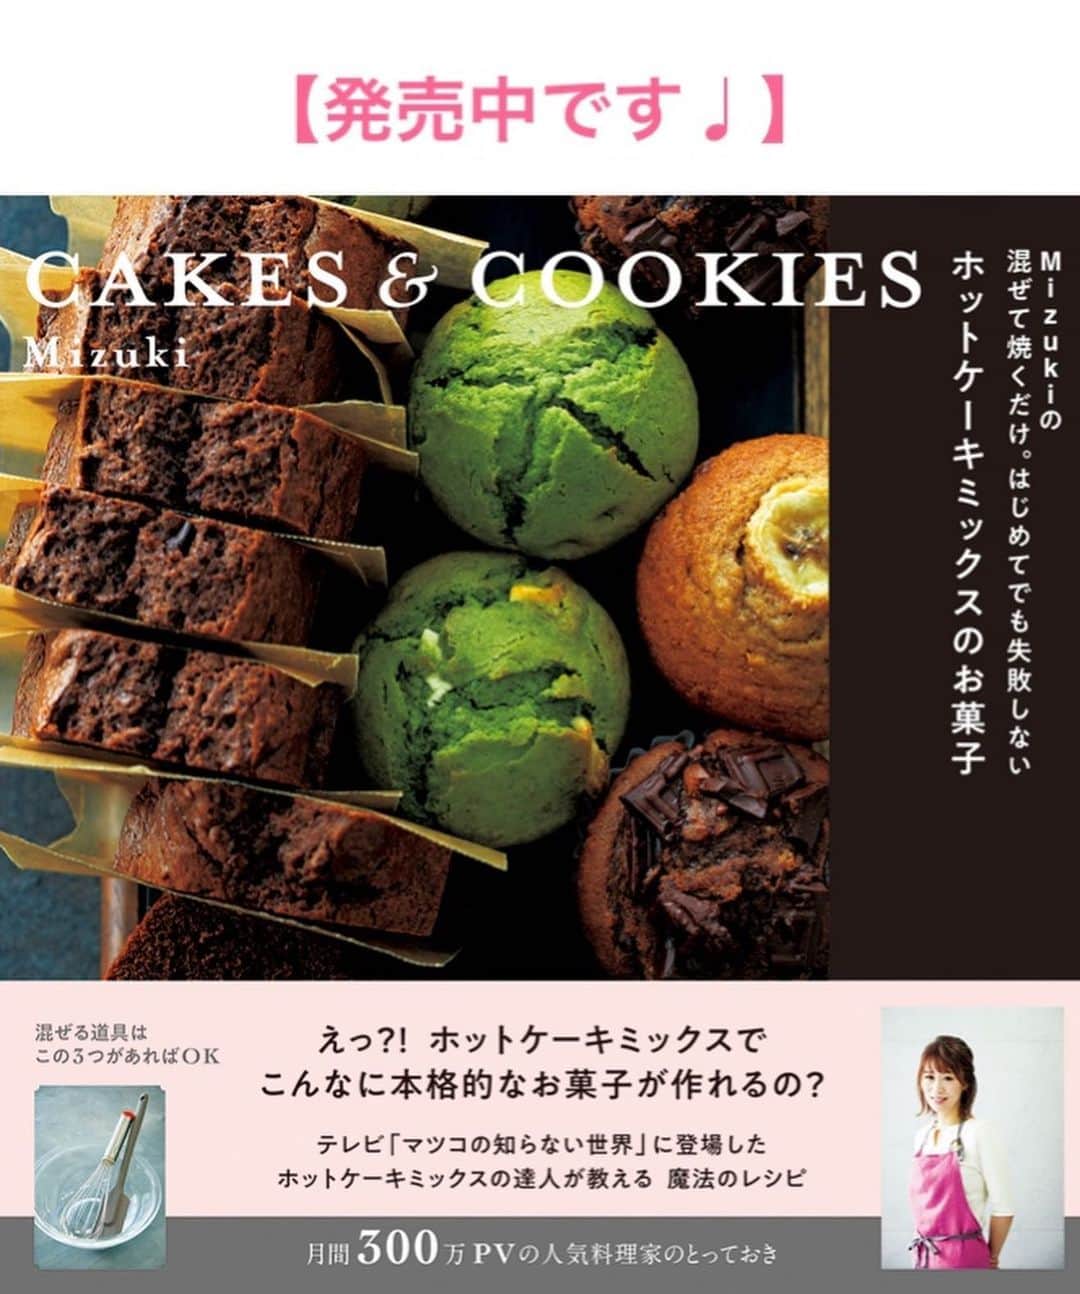 Mizuki【料理ブロガー・簡単レシピ】さんのインスタグラム写真 - (Mizuki【料理ブロガー・簡単レシピ】Instagram)「・﻿ 【レシピ】ーーーーーーーーーーーーーー﻿ ♡包まないから超簡単！小松菜棒餃子♡﻿ ーーーーーーーーーーーーーーーーーーー﻿ ﻿ ﻿ ﻿ おはようございます(*^^*)﻿ ﻿ 今日ご紹介させていただくのは﻿ ひき肉と小松菜だけの2素材餃子♡﻿ 餃子を作るなかでちょっと面倒な﻿ ［包む］工程をなくした棒餃子です♩﻿ 皮に具をのせて巻くだけなので﻿ 簡単に短時間で作れますよ(*´艸`)﻿ ﻿ もちろんコスパも抜群なので﻿ よかったらお試し下さいね〜♡﻿ ﻿ ﻿ ﻿ ーーーーーーーーーーーーーーーーーーーー﻿ 【2人分】﻿ 豚ひき肉...150g﻿ 小松菜...1/2束(100g)﻿ ●醤油・ごま油...各小1﻿ ●鶏がらスープ...小1/4﻿ ●にんにくチューブ...2cm﻿ 餃子の皮...17枚前後﻿ ごま油...大1﻿ (好みで)ぽん酢・ラー油...各適量﻿ ﻿ 1.小松菜はみじん切りにする。ボウルにひき肉、小松菜、●を入れてよく混ぜる。﻿ 2.餃子の皮の中央に1を細長く乗せ、皮の両端が1cm程重なるように巻く。﻿ 3.フライパンにごま油を伸ばし、2を(とじ目を上にして)並べてから中火にかける。焼き色がついたら水50mlを加え、フタをして弱めの中火で3分蒸し焼きにする。﻿ 4.残った水分を飛ばして器に盛り、ぽん酢とラー油を添える。﻿ ーーーーーーーーーーーーーーーーーーーー﻿ ﻿ ﻿ ﻿ 《ポイント》﻿ ♦︎餃子のあんは大1弱ずつ包んでいます♩﻿ ♦︎しっかり焼き色が付いてから水を加え、しっかり水分を飛ばすと綺麗に仕上がります♩﻿ ﻿ ﻿ ﻿ ﻿ ﻿ ﻿ ﻿ ﻿ 🔻入荷しました🔻﻿ ストーリーにリンク貼っています🙇‍♀️﻿ ＿＿＿＿＿＿＿＿＿＿＿＿＿＿＿＿＿＿＿﻿ 📕\ \ 新刊発売中 / /📕﻿ 簡単・時短！ 毎日のごはんがラクになる﻿ ✨🦋 【 #Mizukiの今どき和食 】🦋✨﻿ ＿＿＿＿＿＿＿＿＿＿＿＿＿＿＿＿＿＿＿﻿ ﻿ なるべく少ない材料で﻿ 手間も時間も省きながら﻿ 簡単にできるおいしい和食レシピ♩﻿ 簡単に失敗なくマスターできる一冊で﻿ もっと気軽に、カジュアルに﻿ 和食を楽しんで下さいね(*^^*)﻿ ﻿ ﻿ ーーー ⭐️PART.1 メインおかず ⭐️ーーー﻿ 素材別にレシピをご紹介しています♩﻿ 和食の定番から新定番まで﻿ どれも押さえておきたいメニューばかり。﻿ 肉じゃがはフライパンで！焼き豚はレンジで！﻿ ぶり大根は切り身を使って手軽に作ります♩﻿ ﻿ ーーー ☘️PART.2 サブおかず ☘️ーーー﻿ 年中手に入るお手頃野菜と﻿ 乾物や大豆、こんにゃくなどを使った﻿ 副菜レシピをたっぷり掲載！！﻿ 普段SNSではメインおかずばかりなので﻿ 本では副菜にも力を入れています(*^^*)﻿ ﻿ ーーー 🌸PART.3 ごはんと汁物 🌸ーーー﻿ ささっと作れる丼と麺、﻿ みんなで食べたいいなり寿司や﻿ 手巻きごはんもご紹介！﻿ 複数の炊き込みごはんと﻿ 味噌汁&和風スープも盛りだくさん！﻿ ﻿ ﻿ 各レシピのポイントは﻿ 【写真付きで丁寧に解説】﻿ 副菜レシピもたっぷりなので﻿ 【メインページに副菜メモもつけました】﻿ ＊このメインにはこの副菜が合いますよ〜﻿ という献立の提案です(*^^*)﻿ 【その他コラムも充実】﻿ 全127品中ほぼ全て﻿ 【本だけのレシピです！】﻿ ＿＿＿＿＿＿＿＿＿＿＿＿＿＿＿＿＿＿＿﻿ ﻿ ﻿ ﻿ ﻿ ﻿ ＿＿＿＿＿＿＿＿＿＿＿＿＿＿＿＿＿﻿ 🎀発売中🎀﻿ 【#ホットケーキミックスのお菓子 】﻿ ﻿ 一冊まるっとホケミスイーツ♩﻿ 普段のおやつから﻿ 特別な日にも使えるレシピを﻿ この一冊に詰め込みました(*^^*)﻿ ホットケーキミックスを使えば﻿ 簡単に本格的なお菓子が作れますよ♡﻿ ＿＿＿＿＿＿＿＿＿＿＿＿＿＿＿＿＿﻿ ﻿ ⭐️ストーリー、ハイライト、プロフ画面に﻿ 本のURLを貼らせていただいております♩﻿ →(@mizuki_31cafe )﻿ ﻿ ﻿ ﻿ ﻿ #棒餃子#小松菜#ひき肉#餃子#包まない#コスパ#うちで過ごそう#Mizuki#簡単レシピ#時短レシピ#節約レシピ#料理#レシピ#フーディーテーブル#マカロニメイト#おうちごはん#デリスタグラマー#料理好きな人と繋がりたい#おうちごはん#lover#foodpic#follow#cooking#recipe#lin_stagrammer#stayhome#小松菜棒餃子m」6月1日 7時19分 - mizuki_31cafe